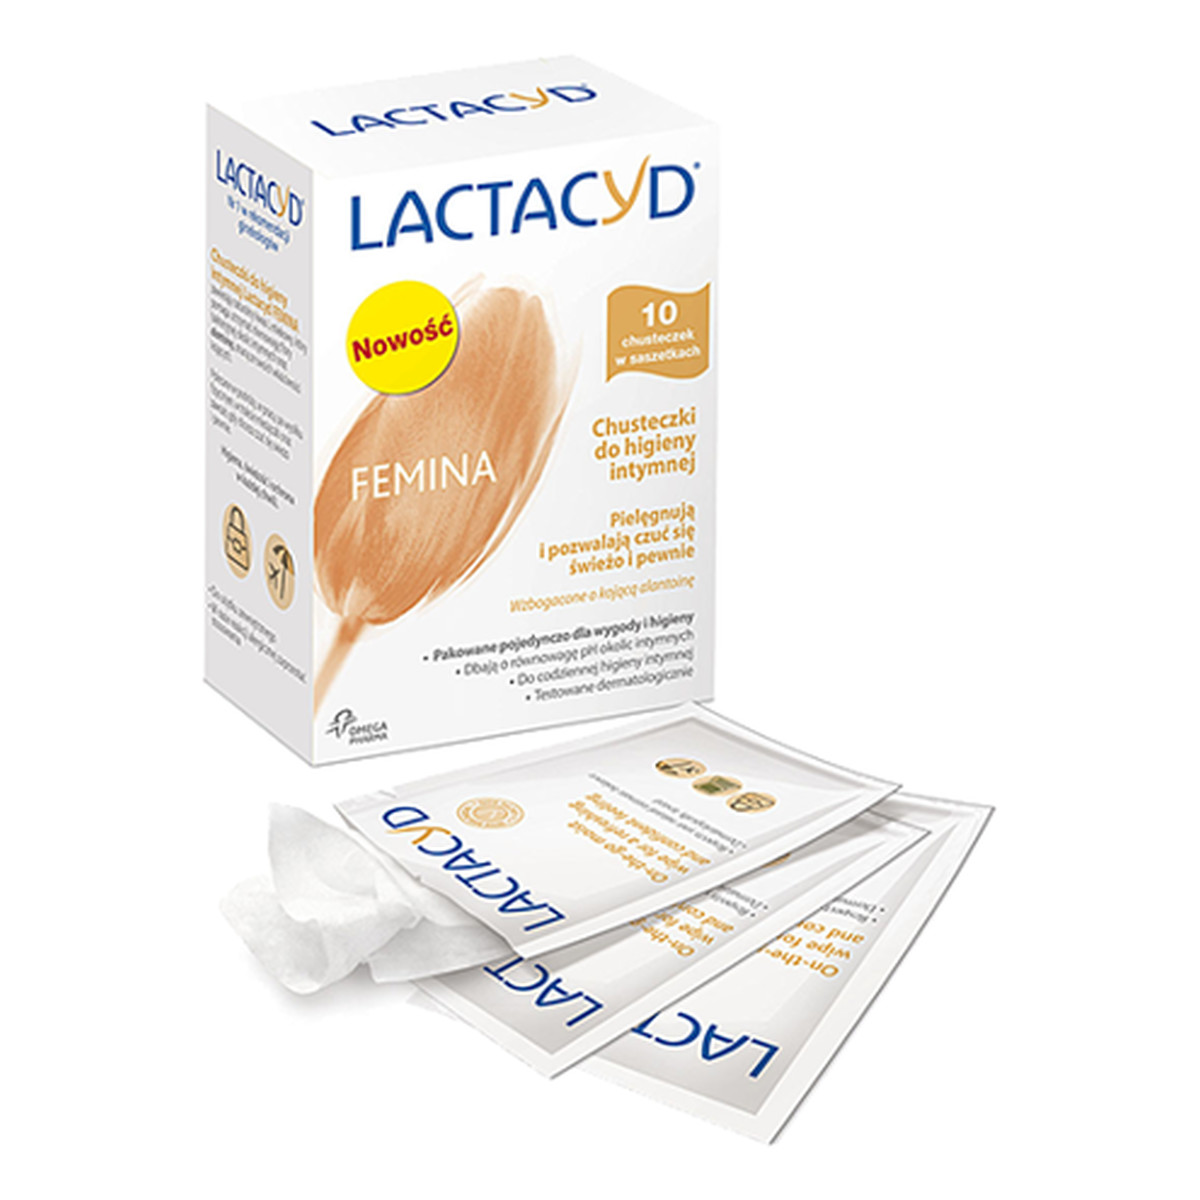 Lactacyd Femina Chusteczki Do Higieny Intymnej 10szt.